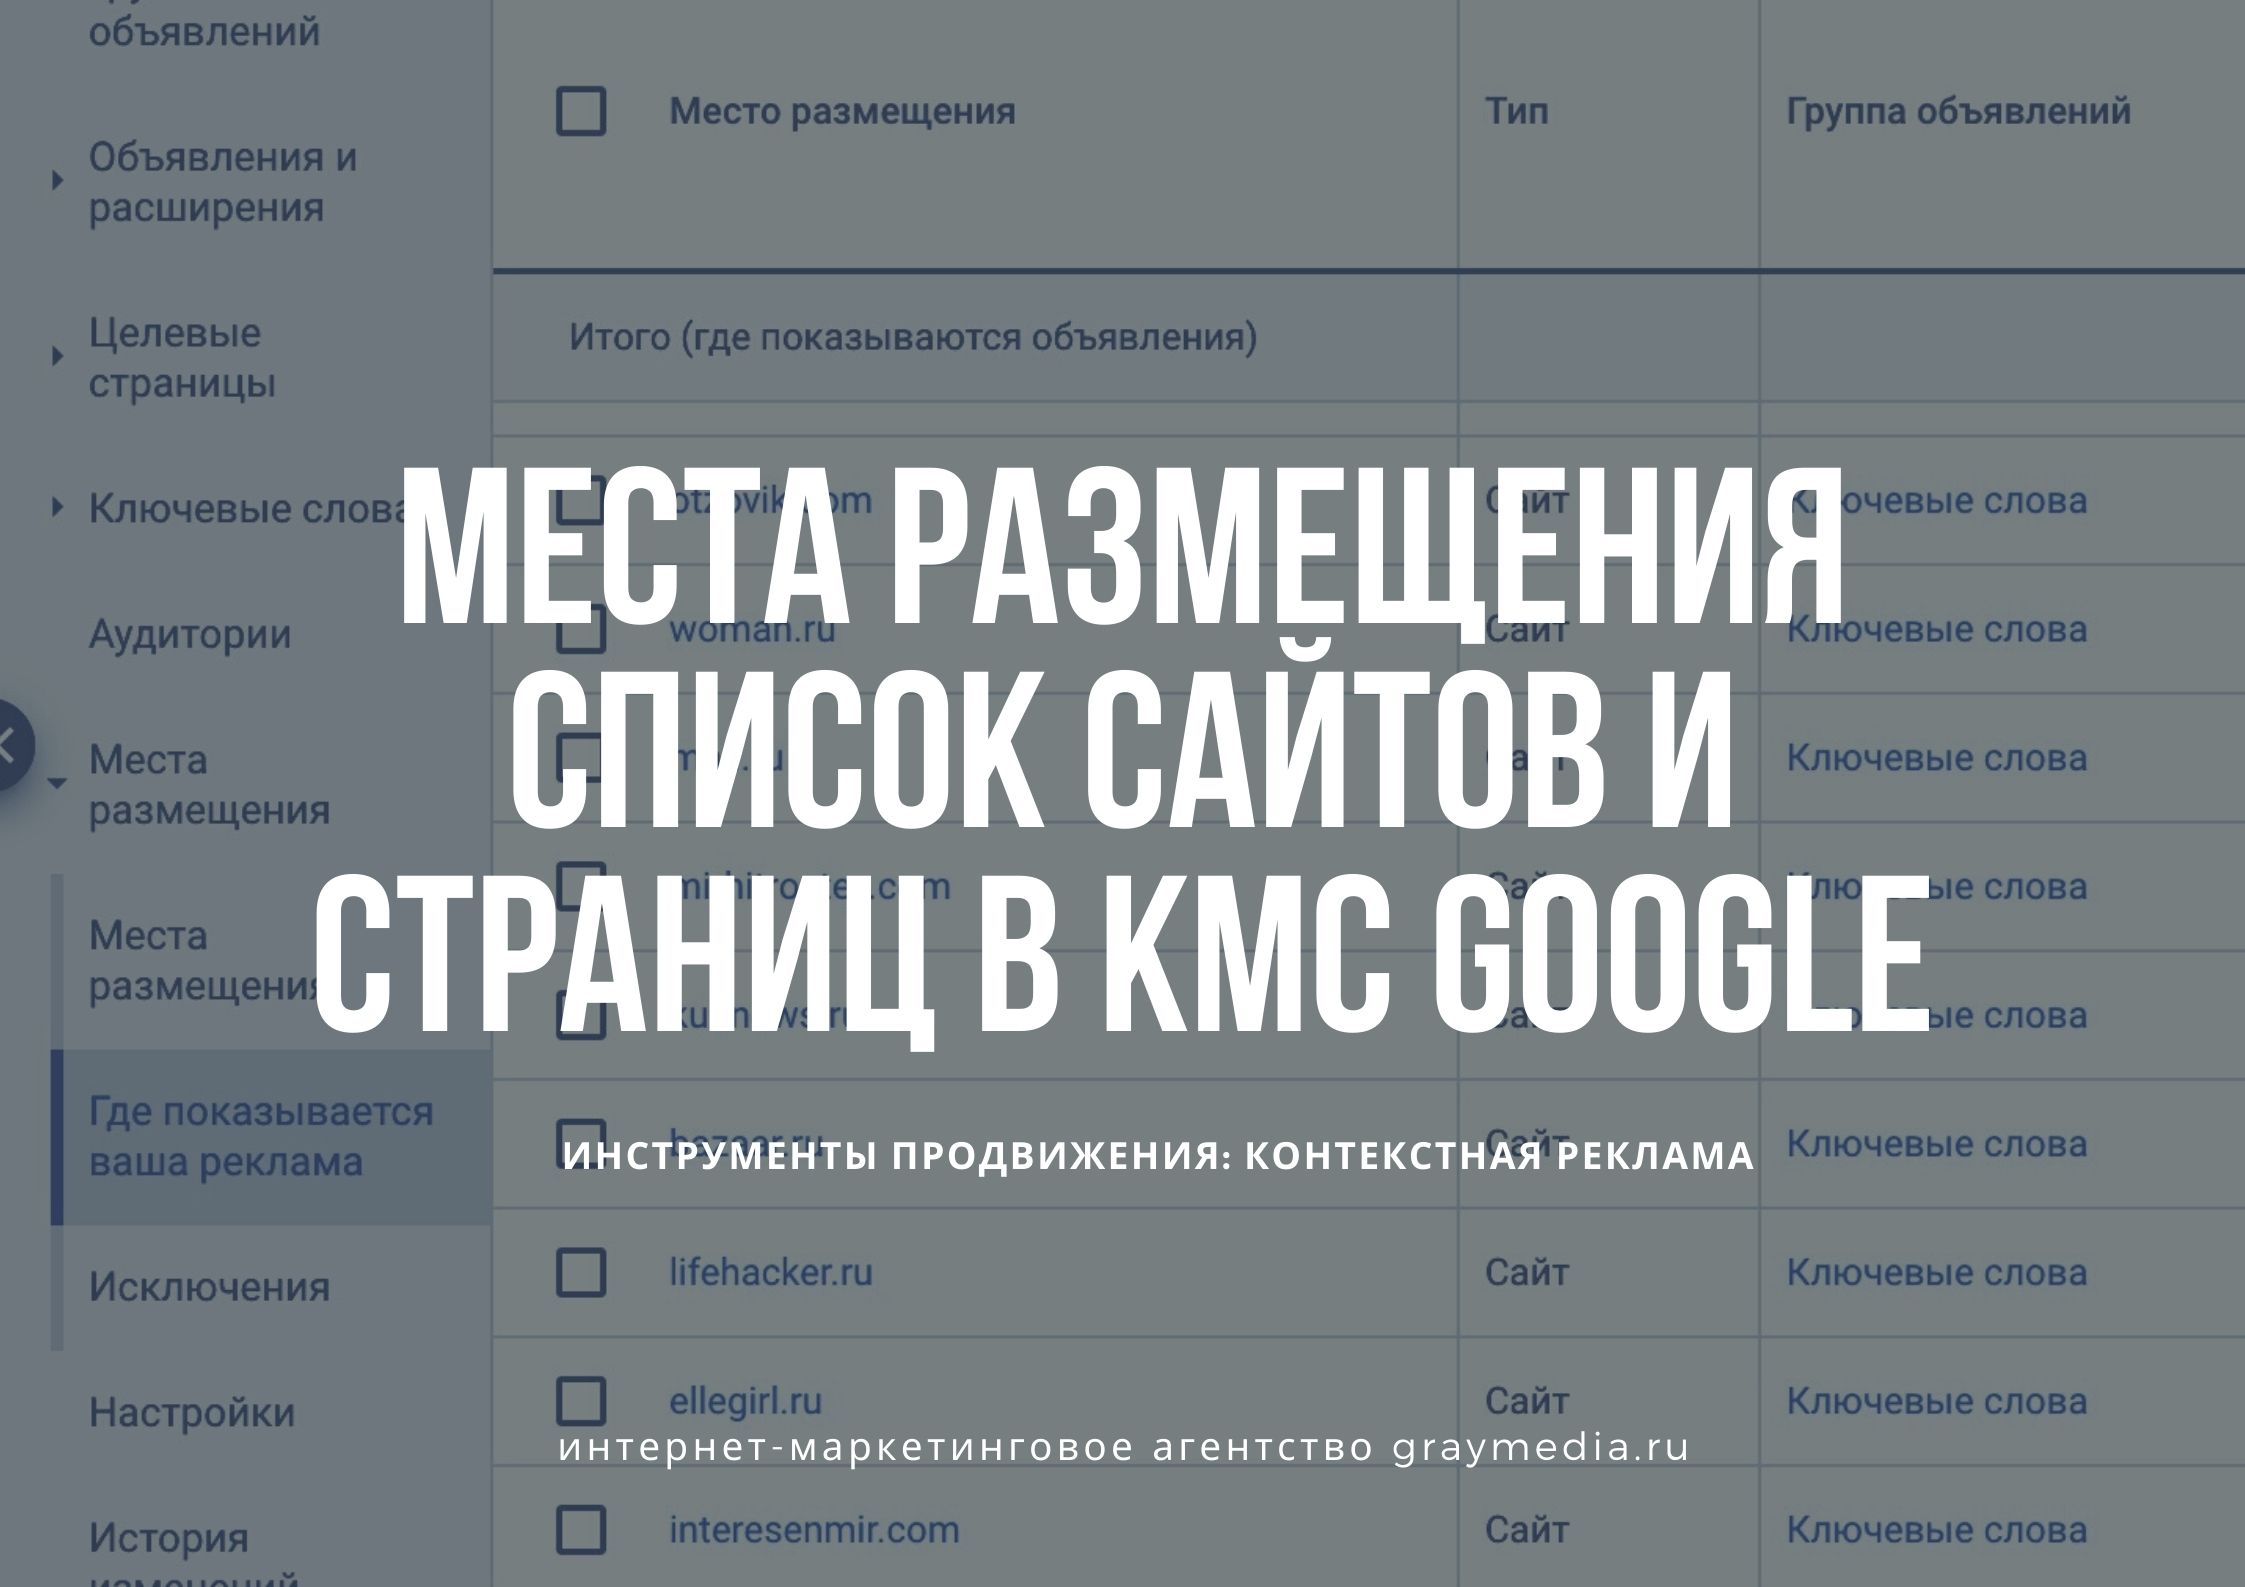 Список сайтов и страниц в Google КМС